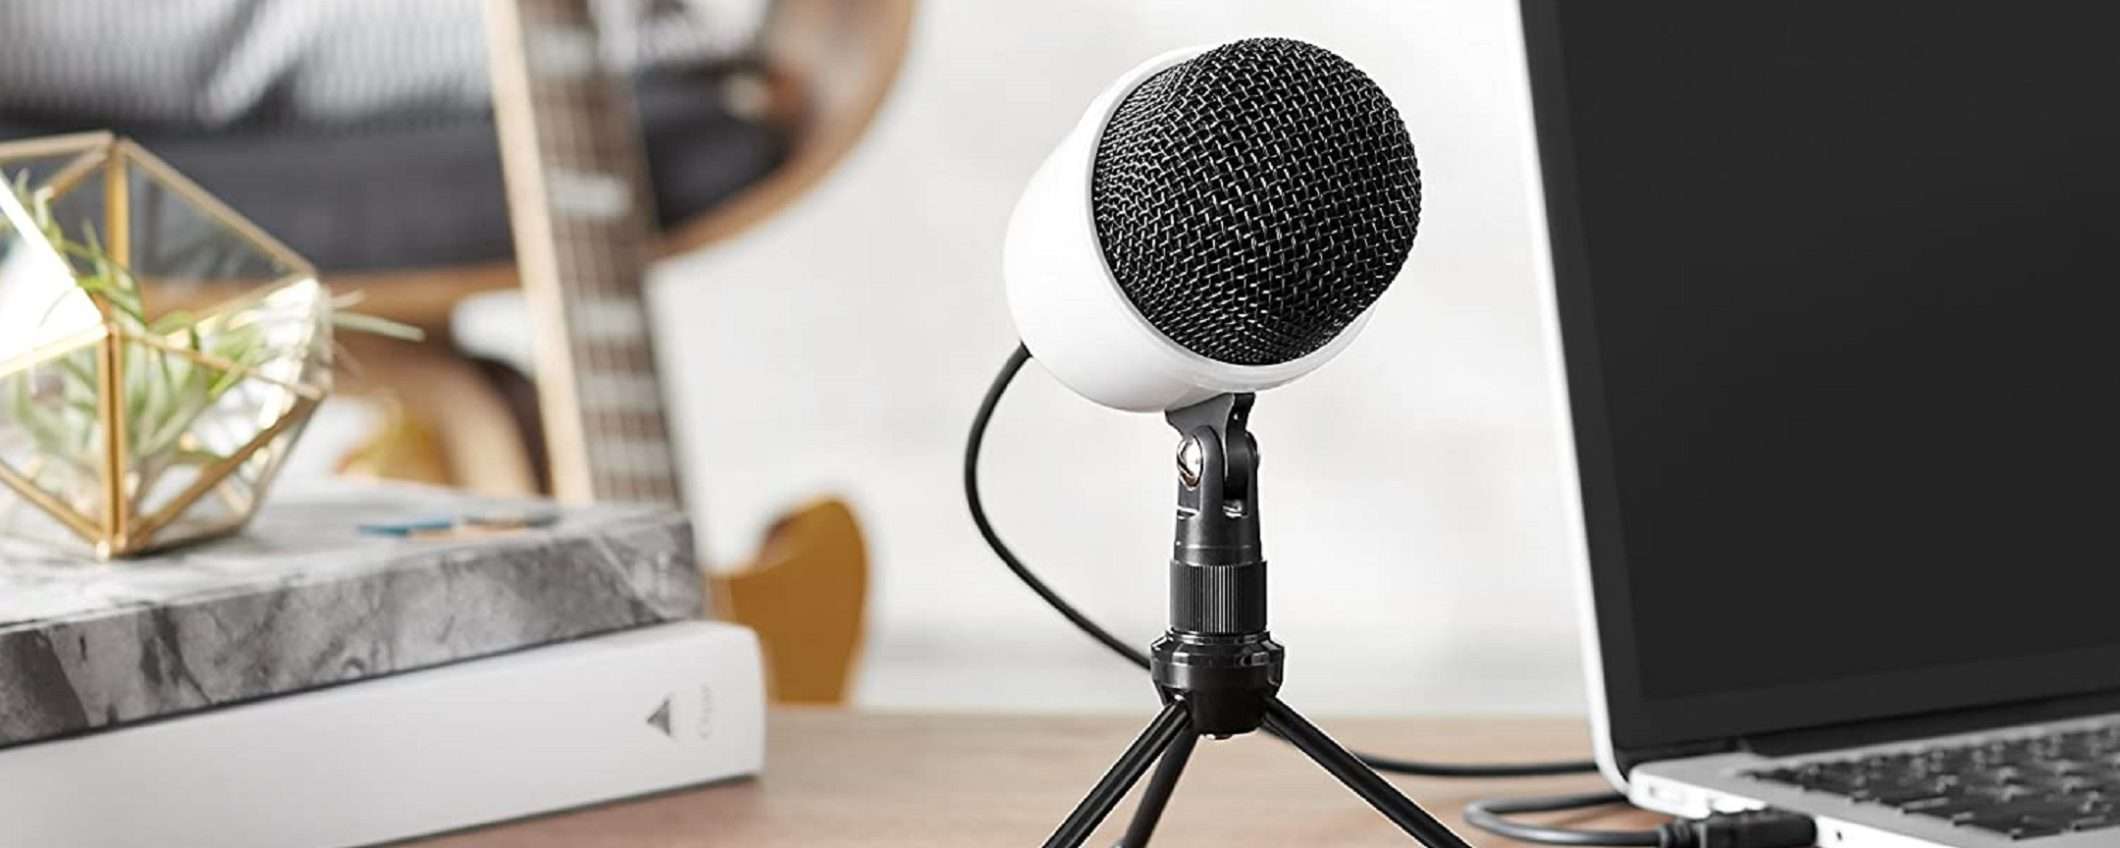 Mini microfono a condensatore Amazon Basics: alta qualità a basso prezzo (solo 25€)